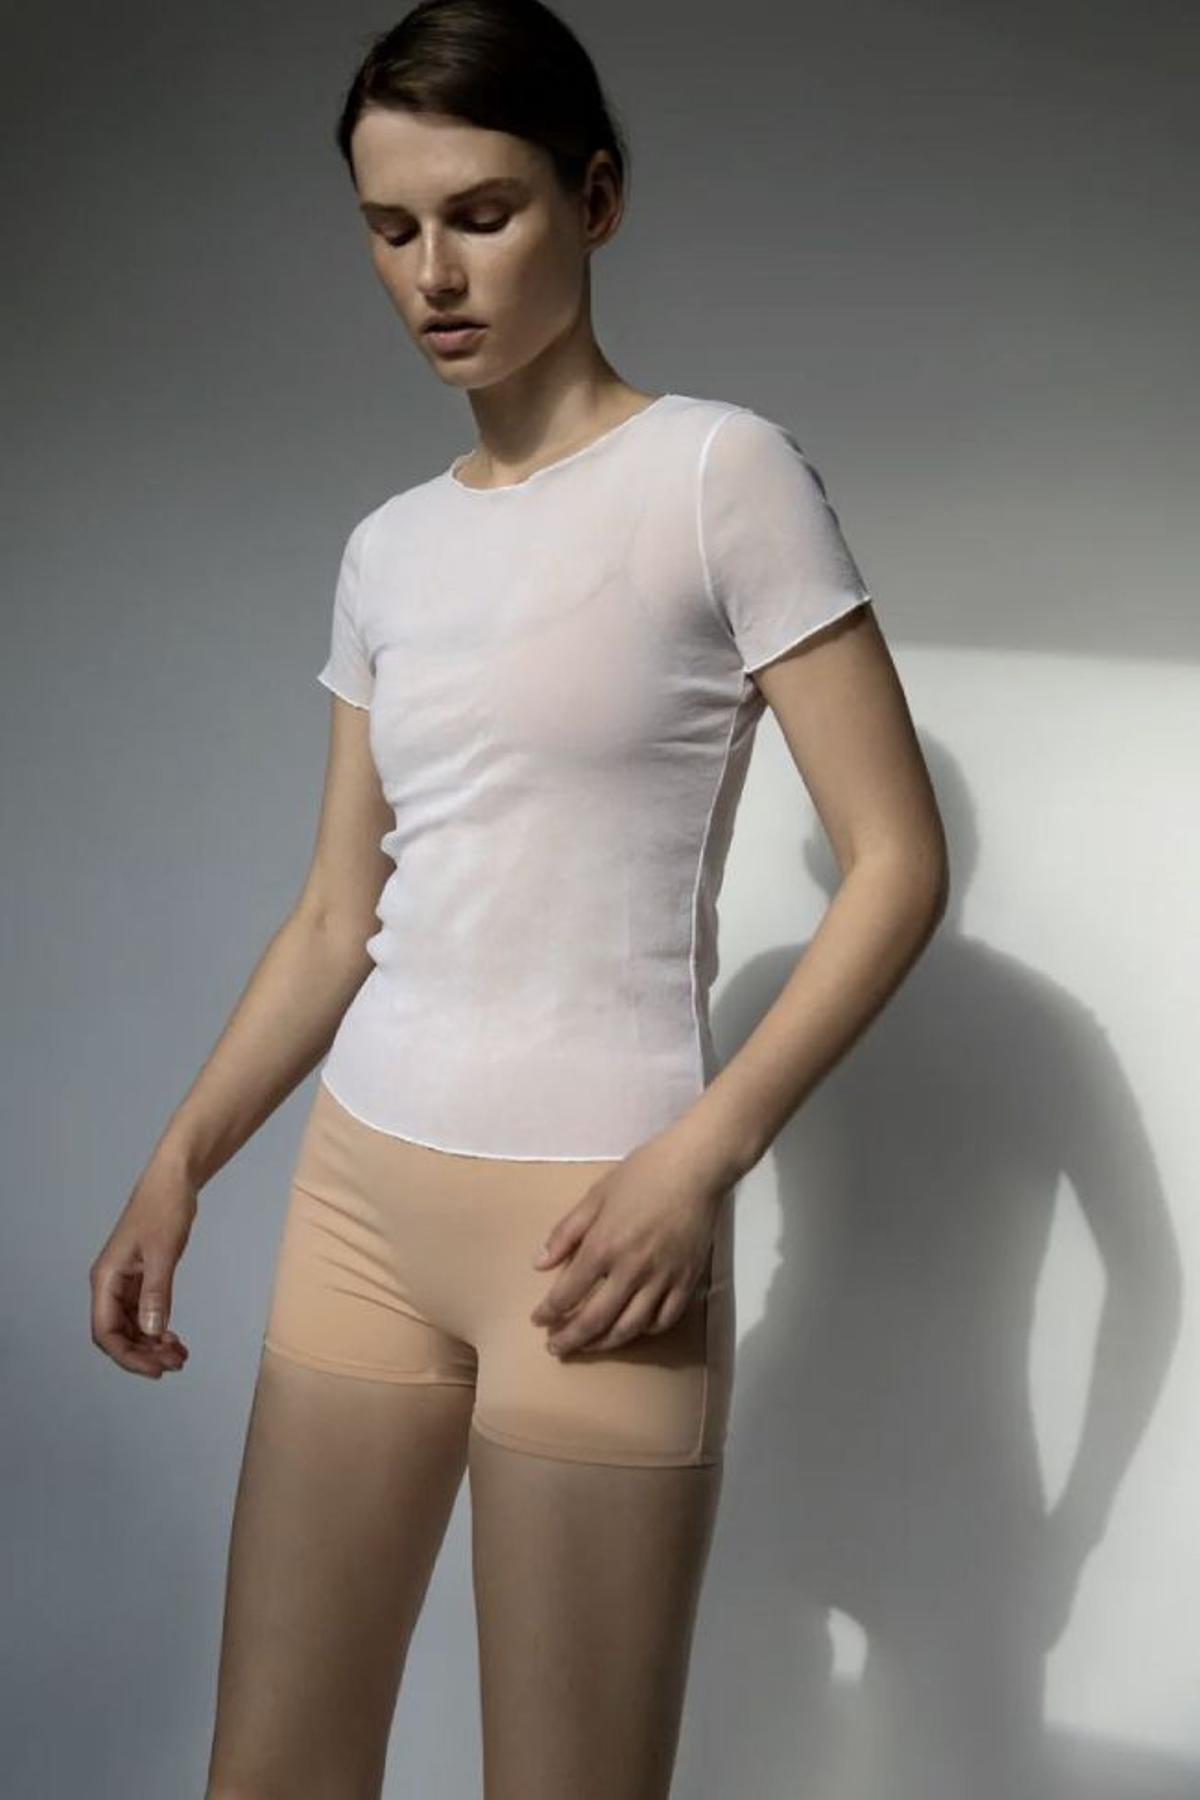 Camiseta, top y short Limited Edition de Zara, 39,95 euros